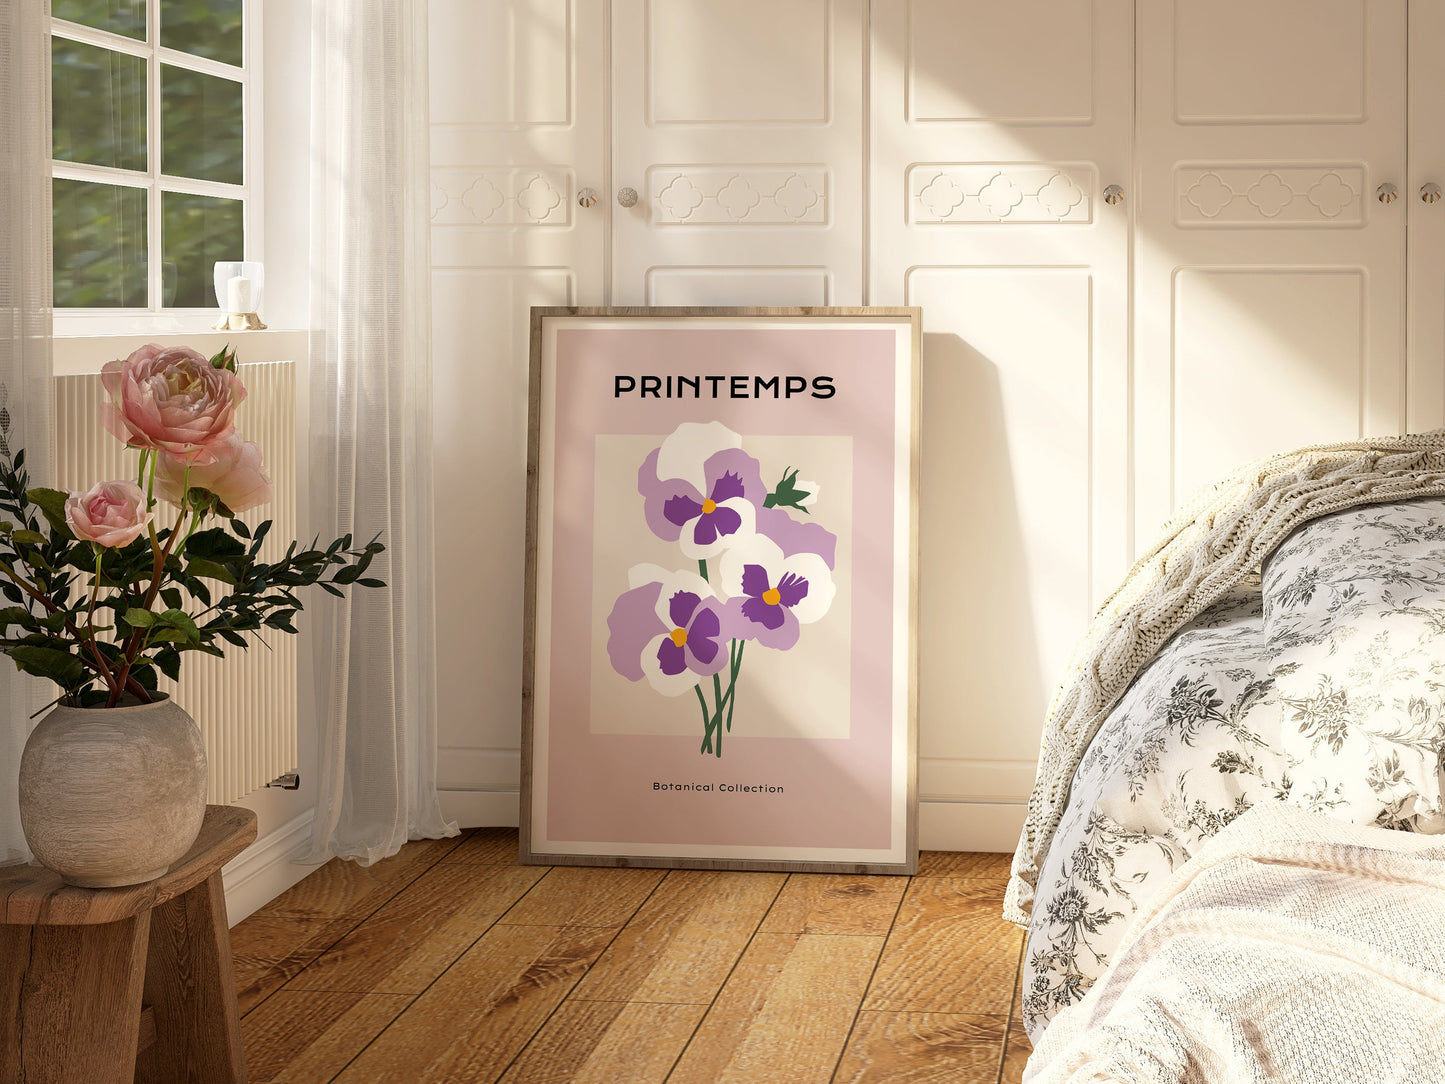 Purple Pansies Art Print